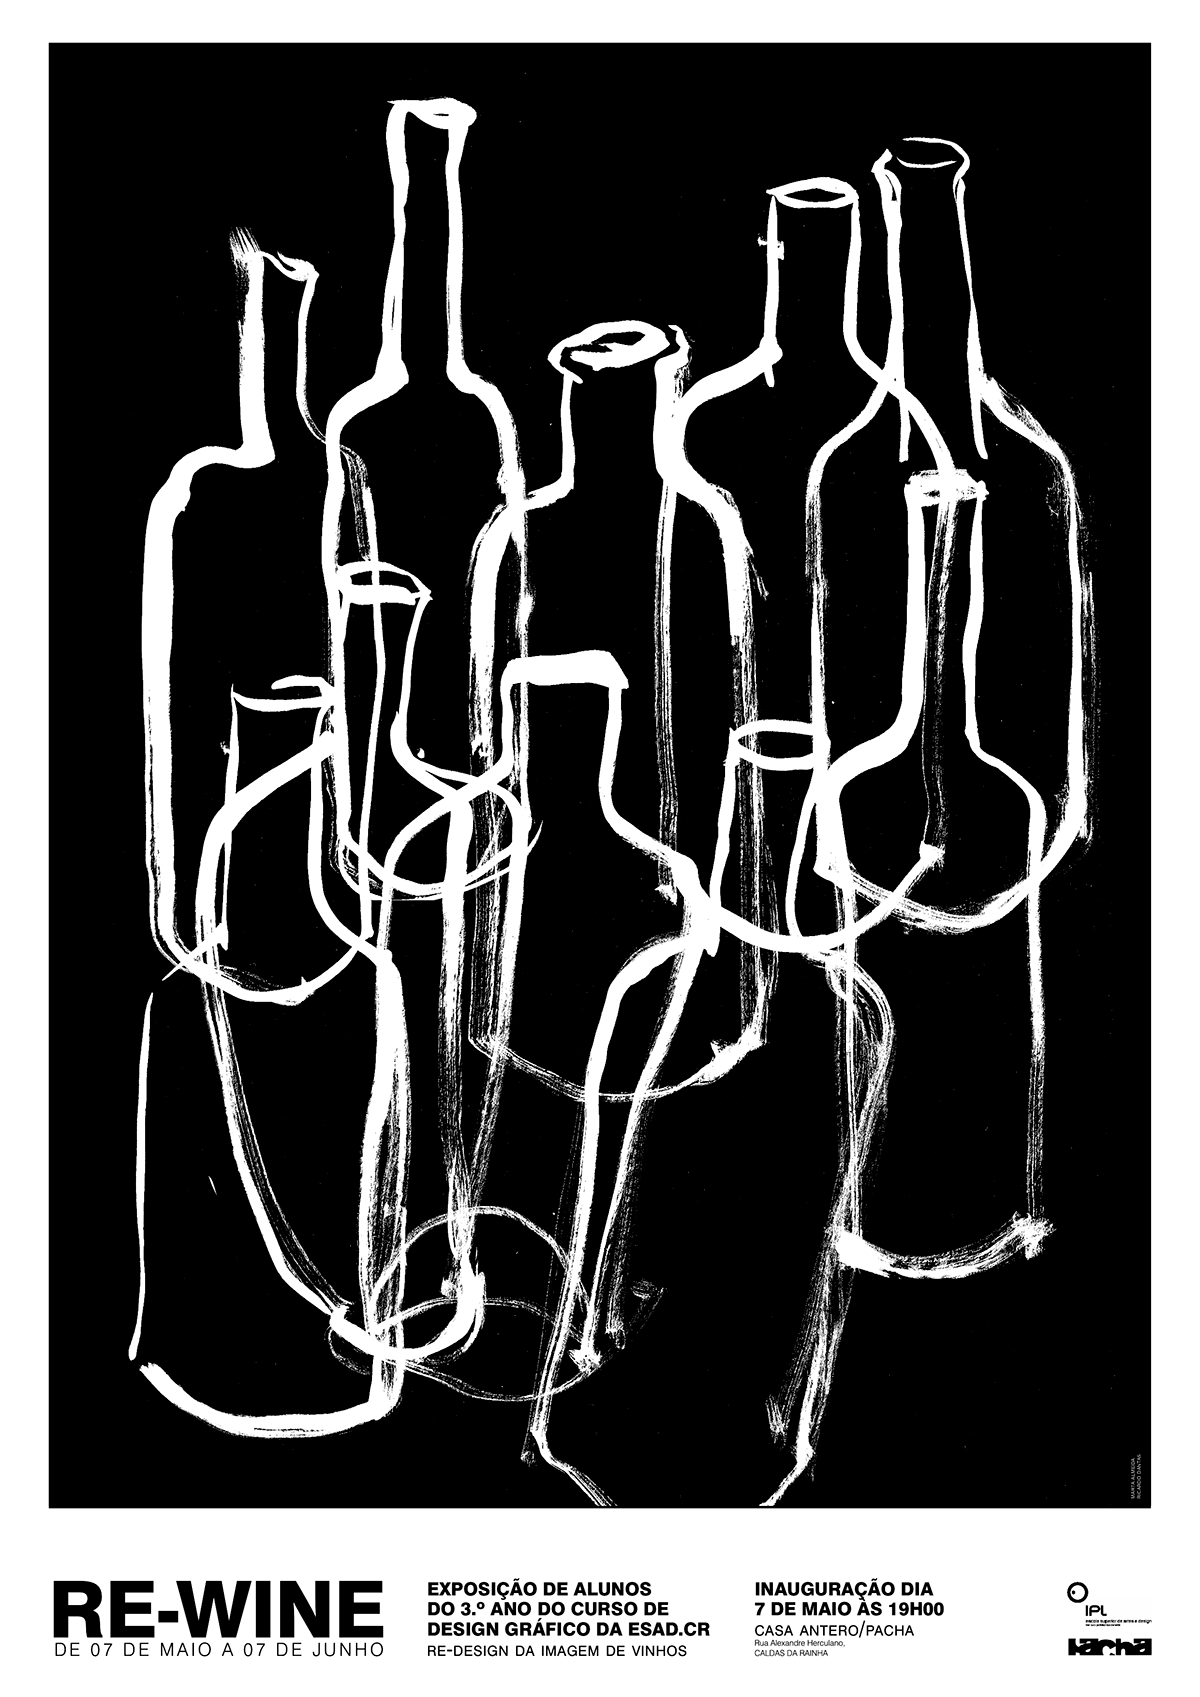 Re-Wine wine poster Ricardo Dantas Marta Almeida caldas da rainha ESAD esad.cr dantas almeida vinho alcool Exposição exhibit exposition